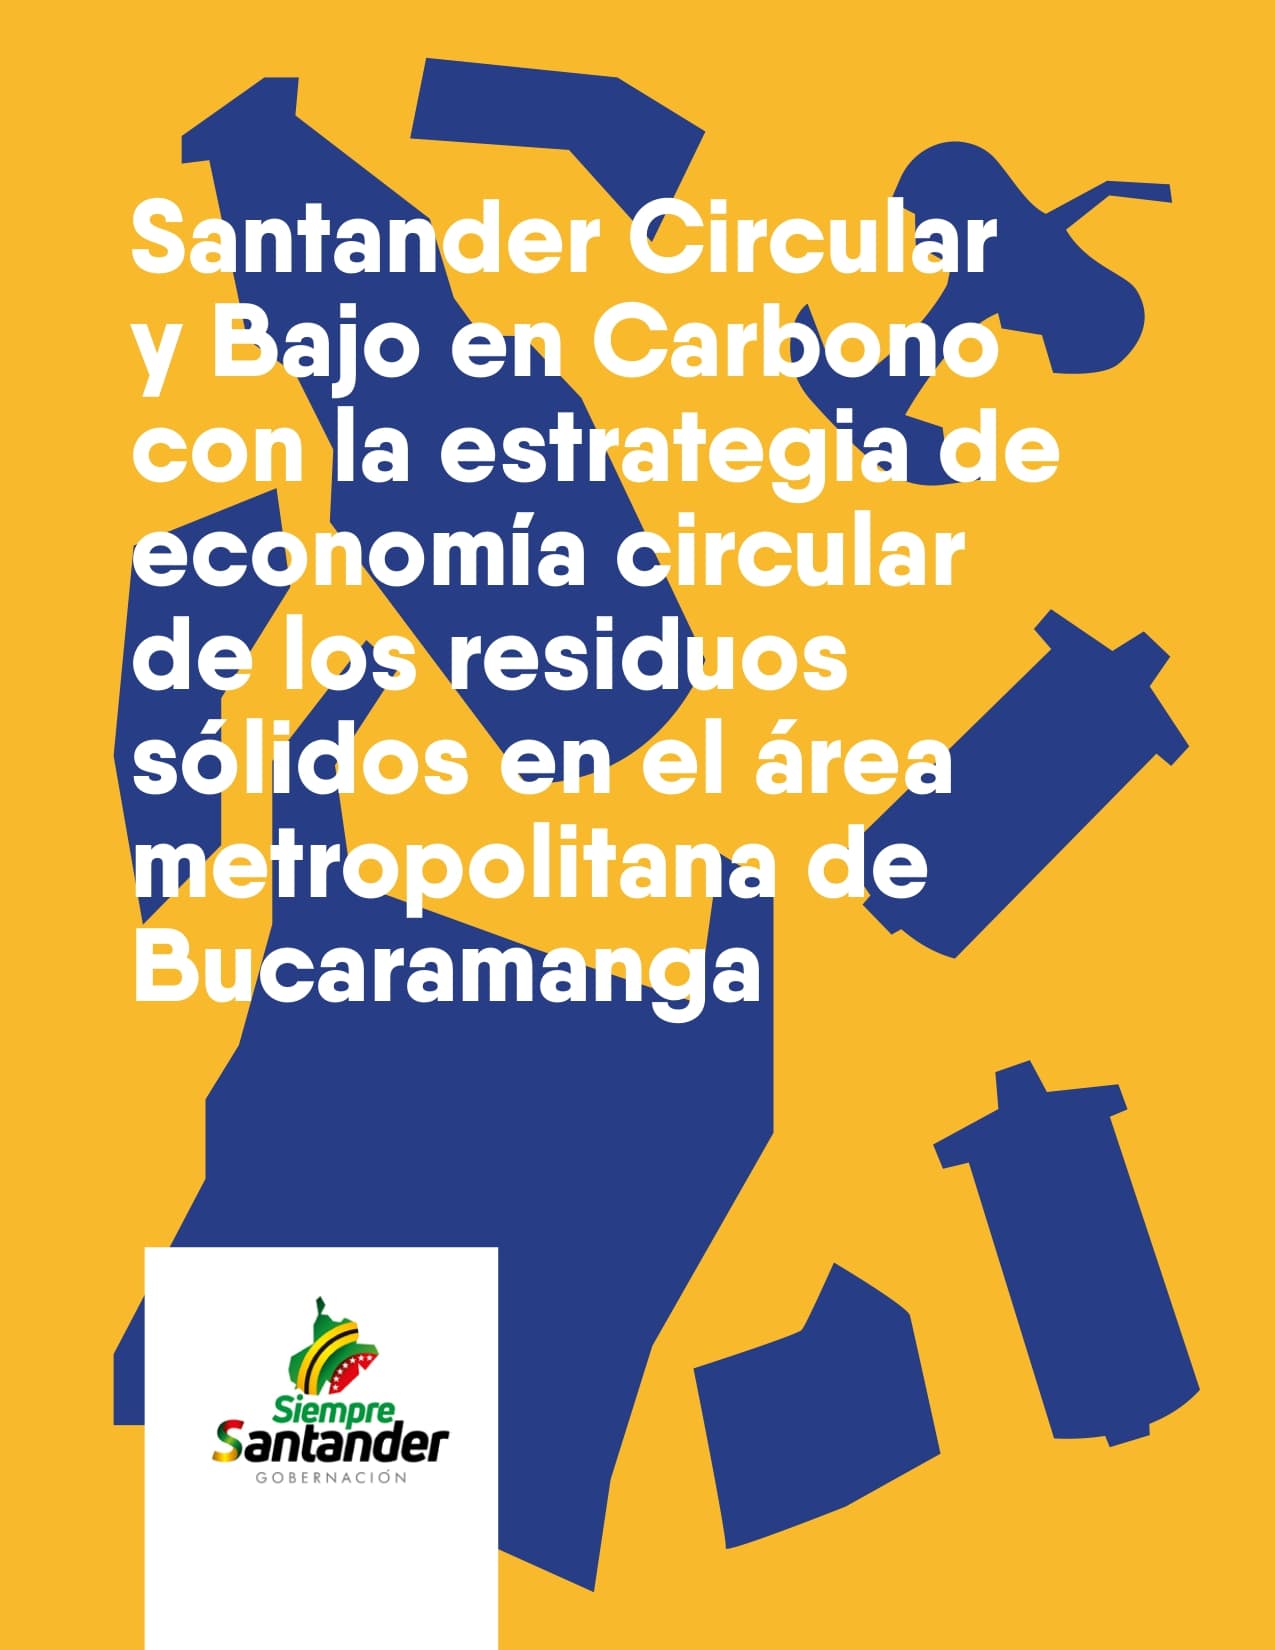 Santander circular y bajo en carbono con la estrategia de economía circular de los residuos sólidos en el Área Metropolitana de Bucaramanga